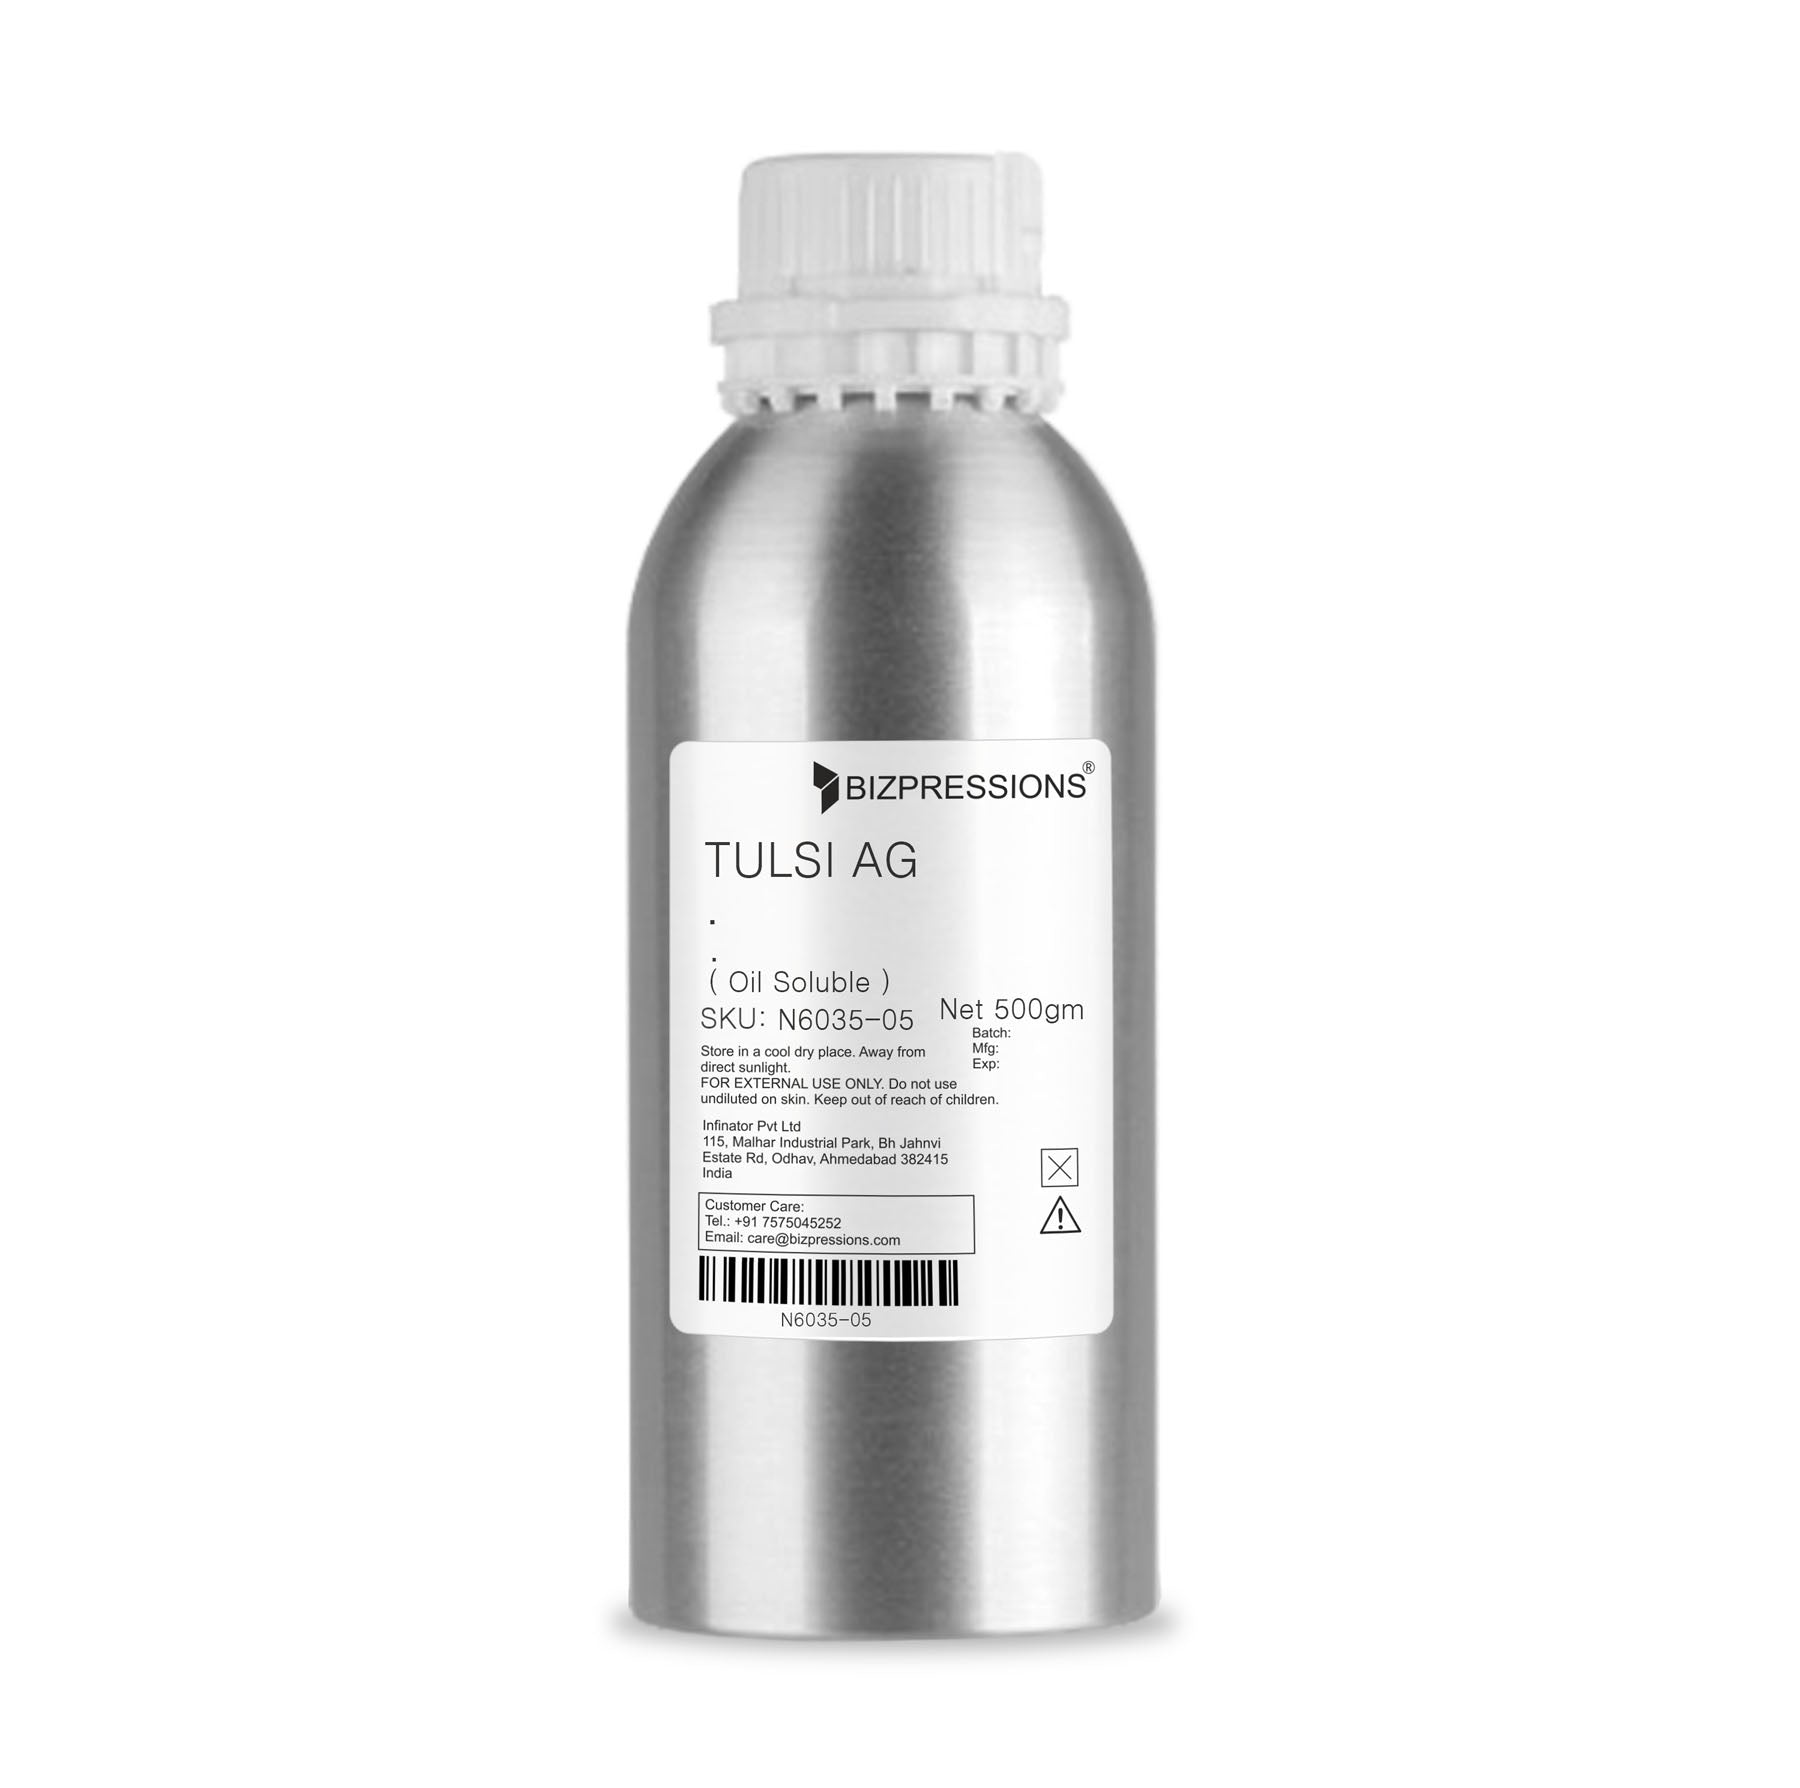 TULSI AG - Fragrance ( Oil Soluble ) - 500 gm